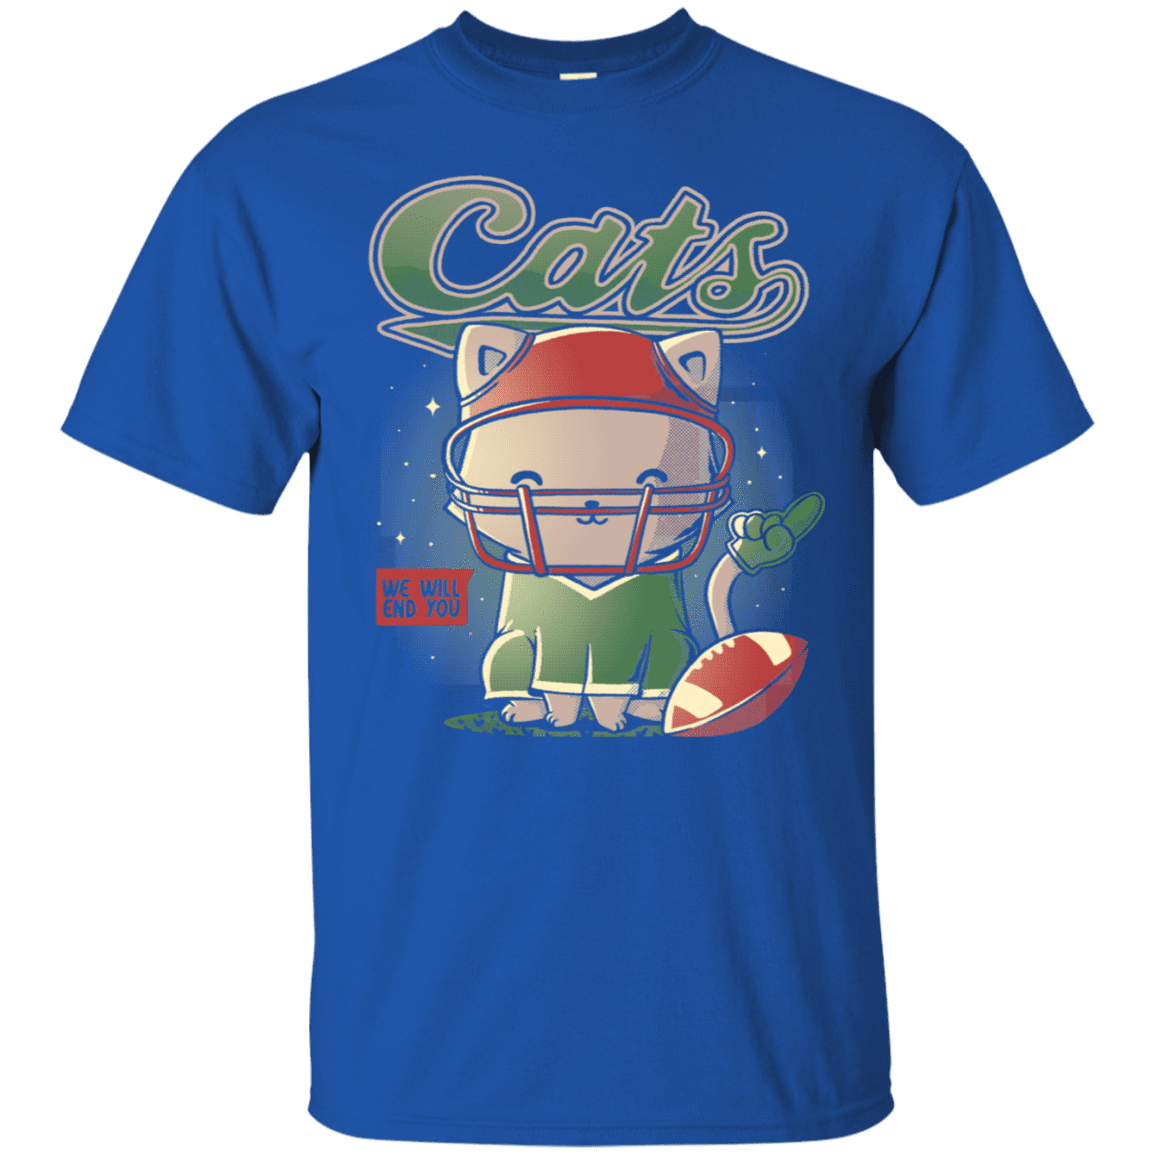 T-Shirts Royal / S Cats Football T-Shirt